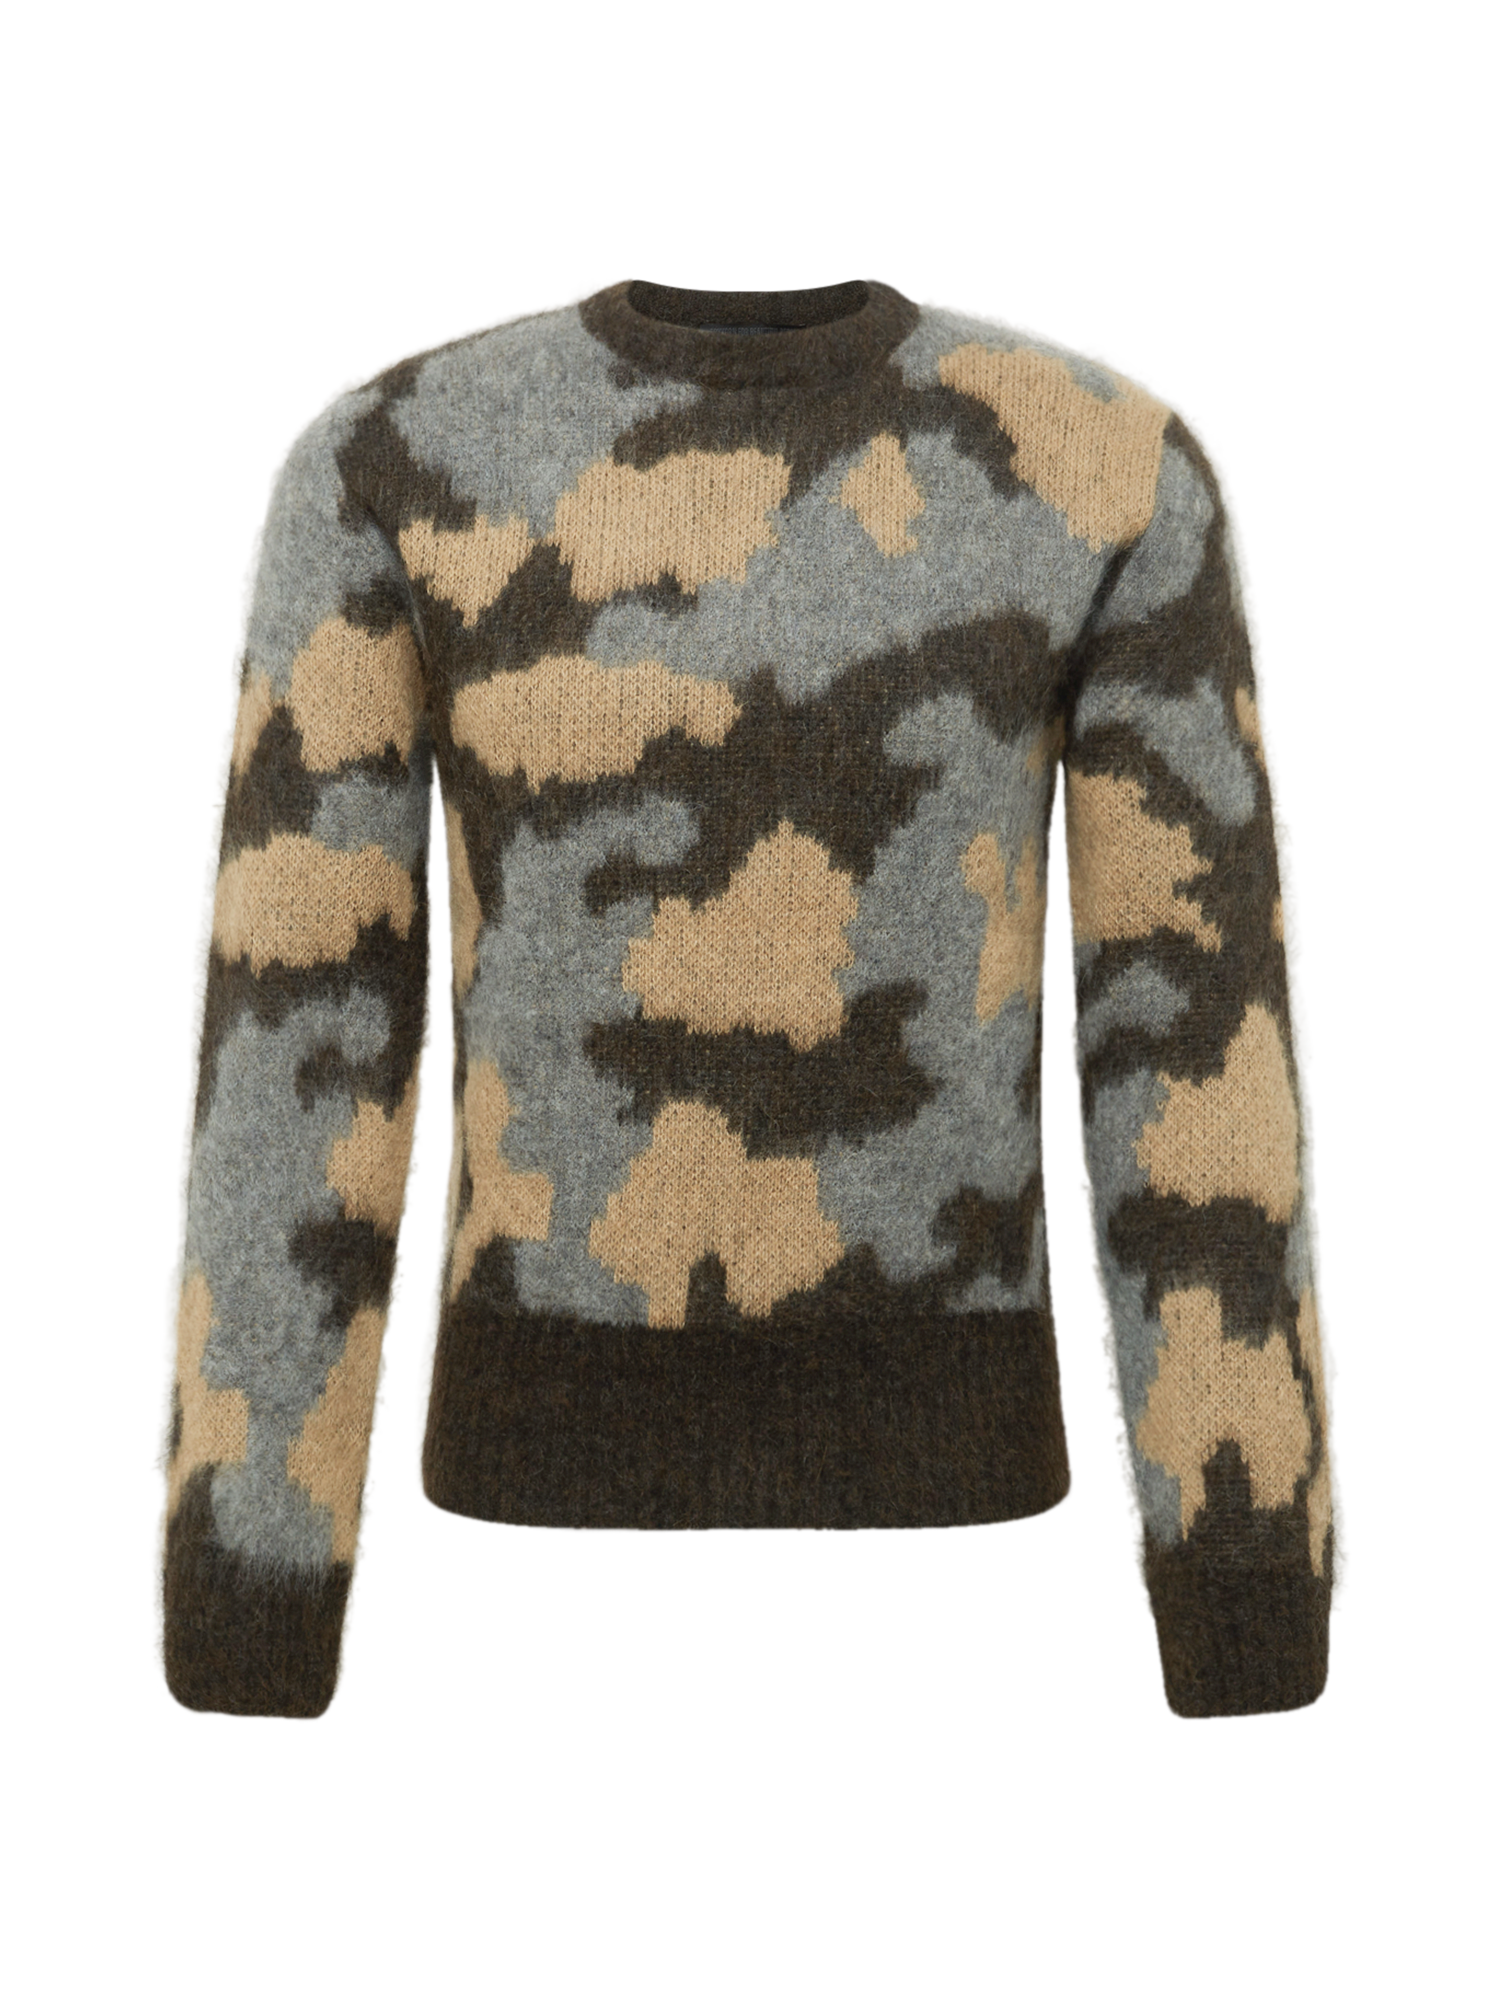 Swetry & kardigany Mężczyźni DRYKORN Sweter VINCENT w kolorze Ciemnobrązowy, Jasnobrązowym 